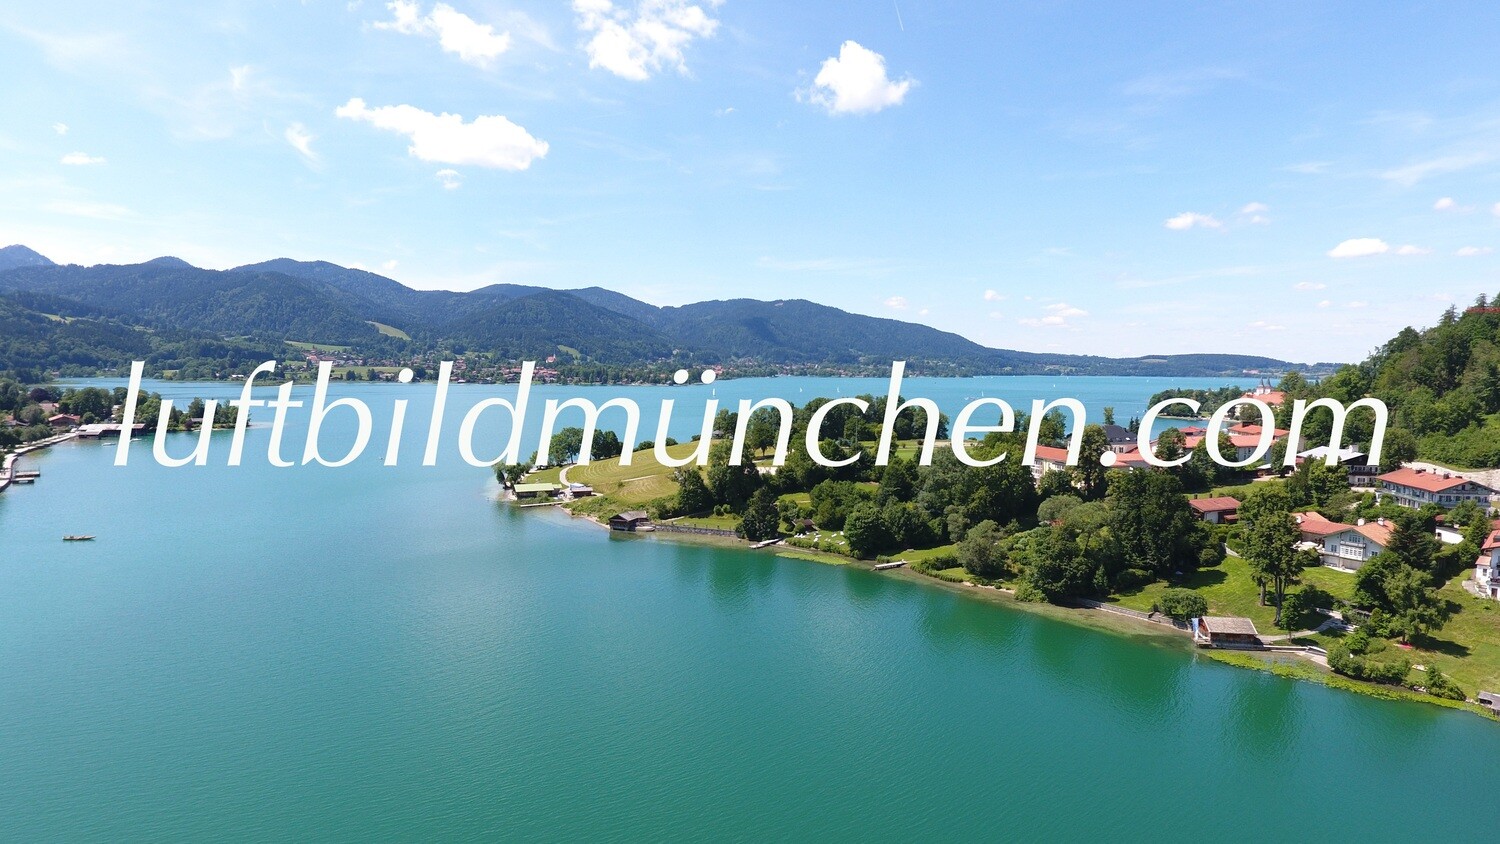 Luftbildfoto, Luftaufnahme, Luftbild, Foto mit Drohne, München, Foto von oben, Wohngebiet, Tegernsee, Rottach Egern, Bad Wiessee, Alpenblick, Alpen, Ufer